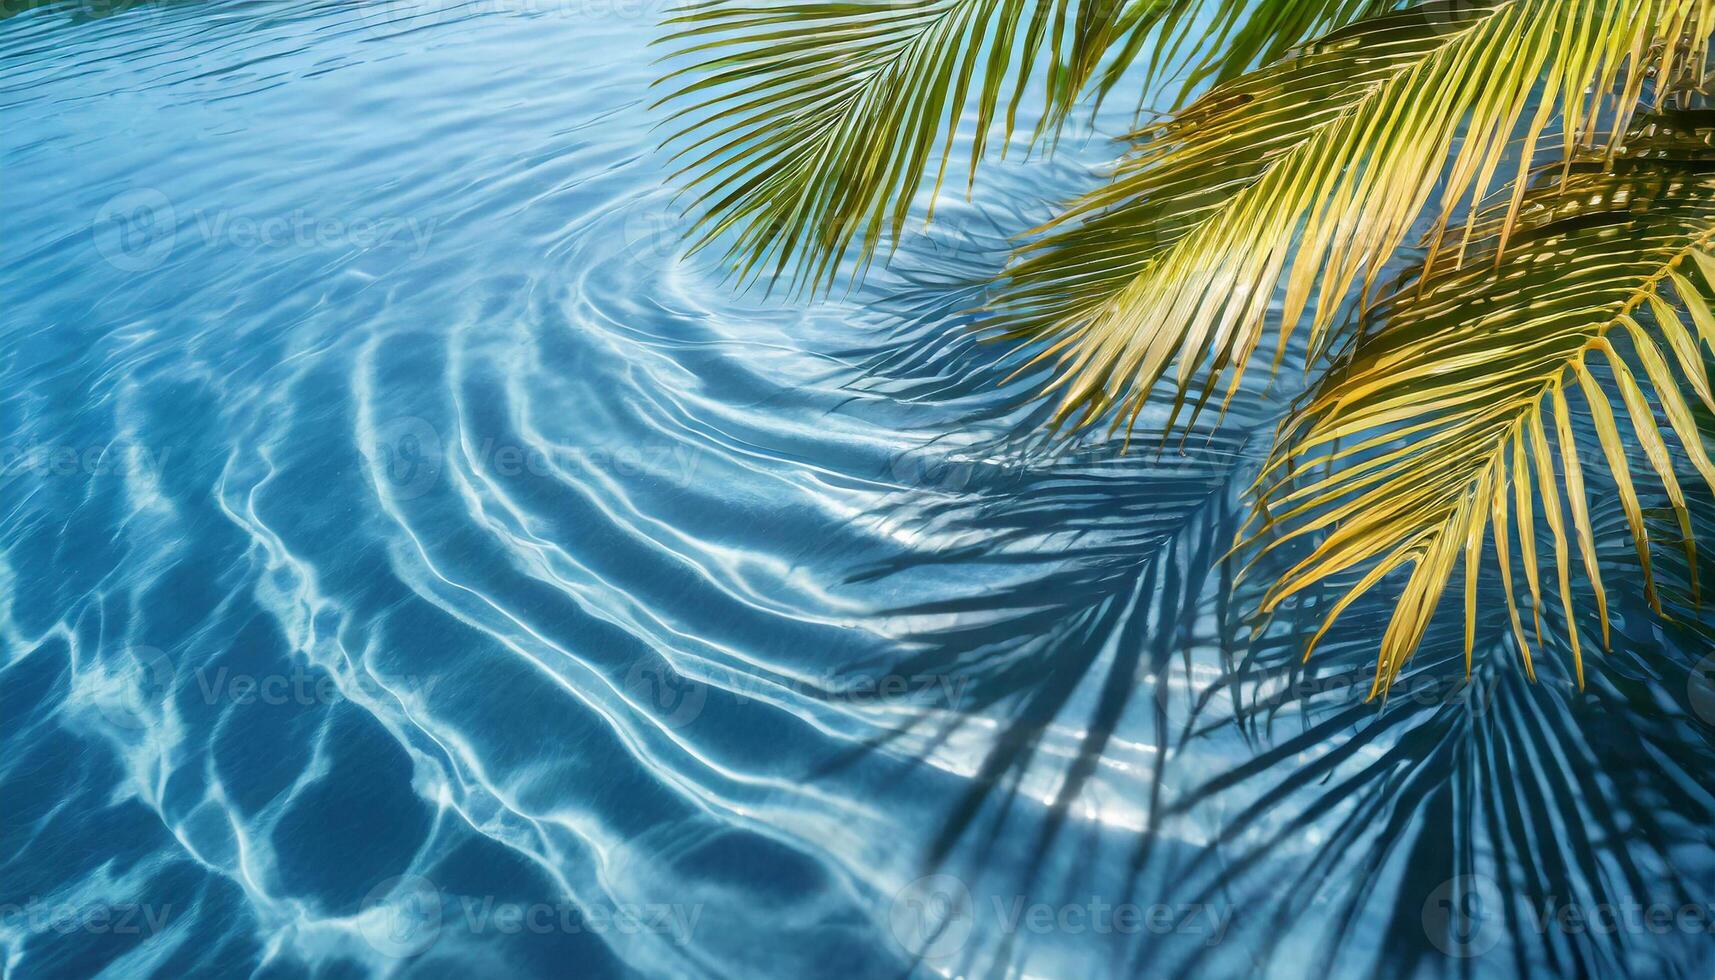 ombres de paume feuilles sur ondulation bleu l'eau surface, tropical Contexte photo